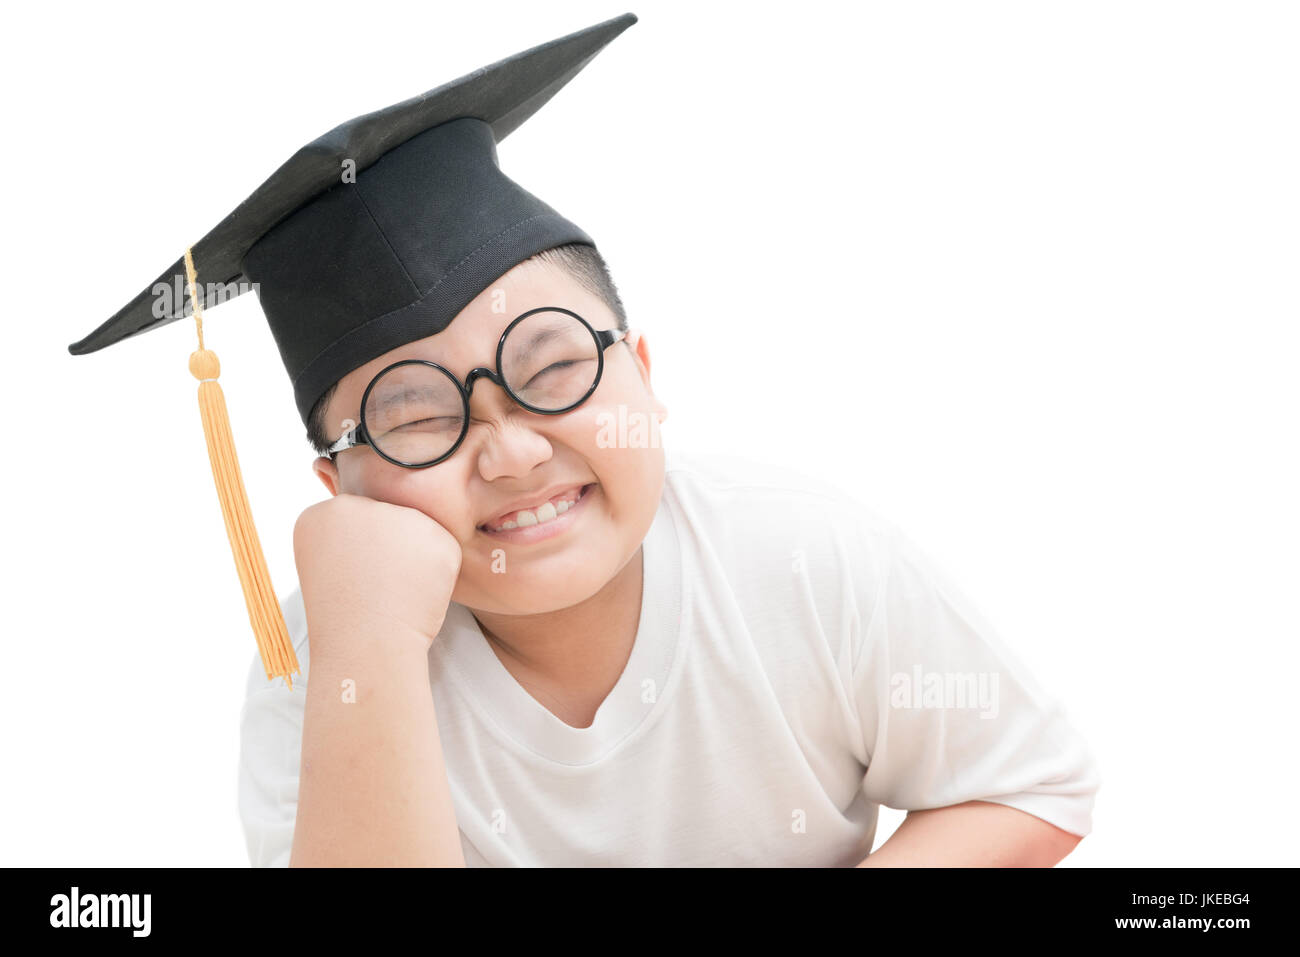 Asiatische Schule Kind graduate Lächeln mit Graduation Cap isoliert auf weißem Hintergrund Stockfoto